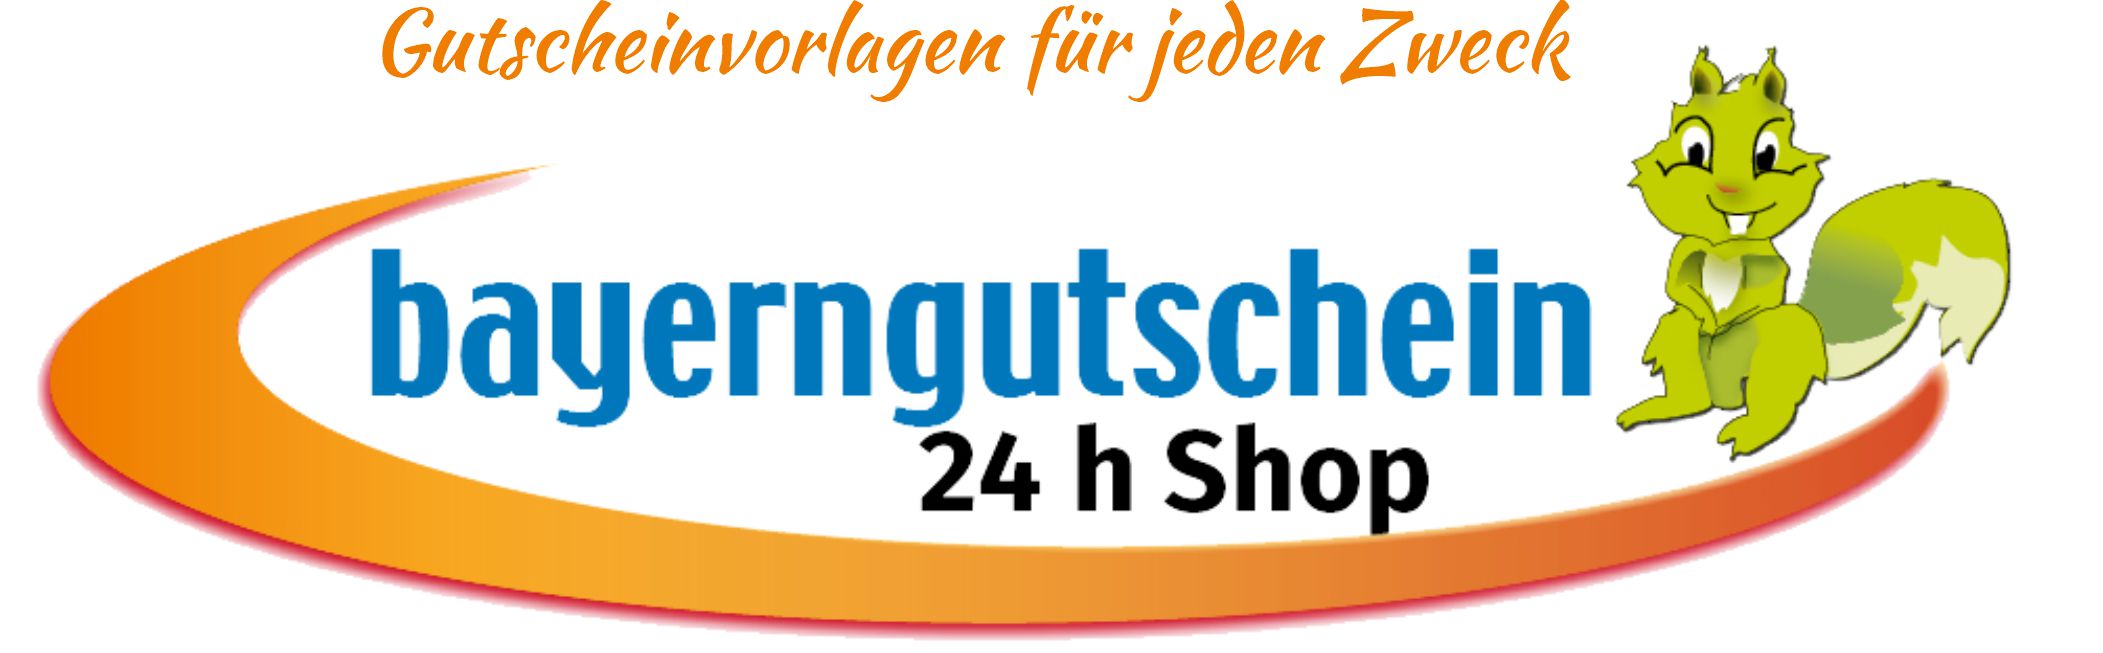 Bayerngutschein Online Sofort Gutschein Shop